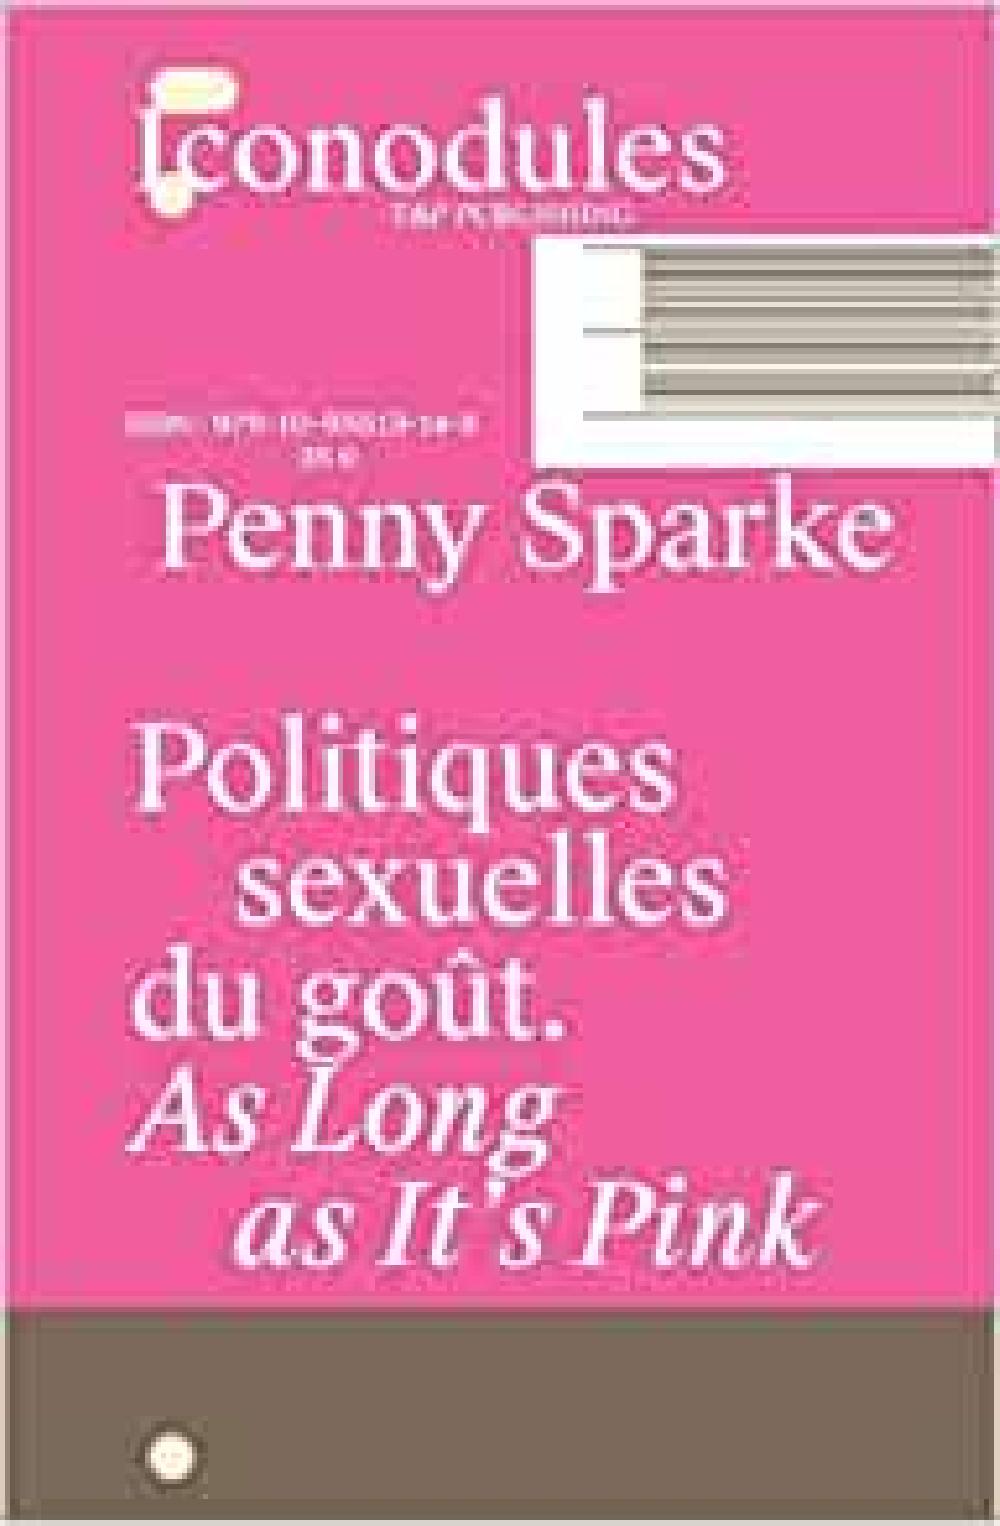 Politiques sexuelles du goût. As long as It's Pink - Penny Sparke